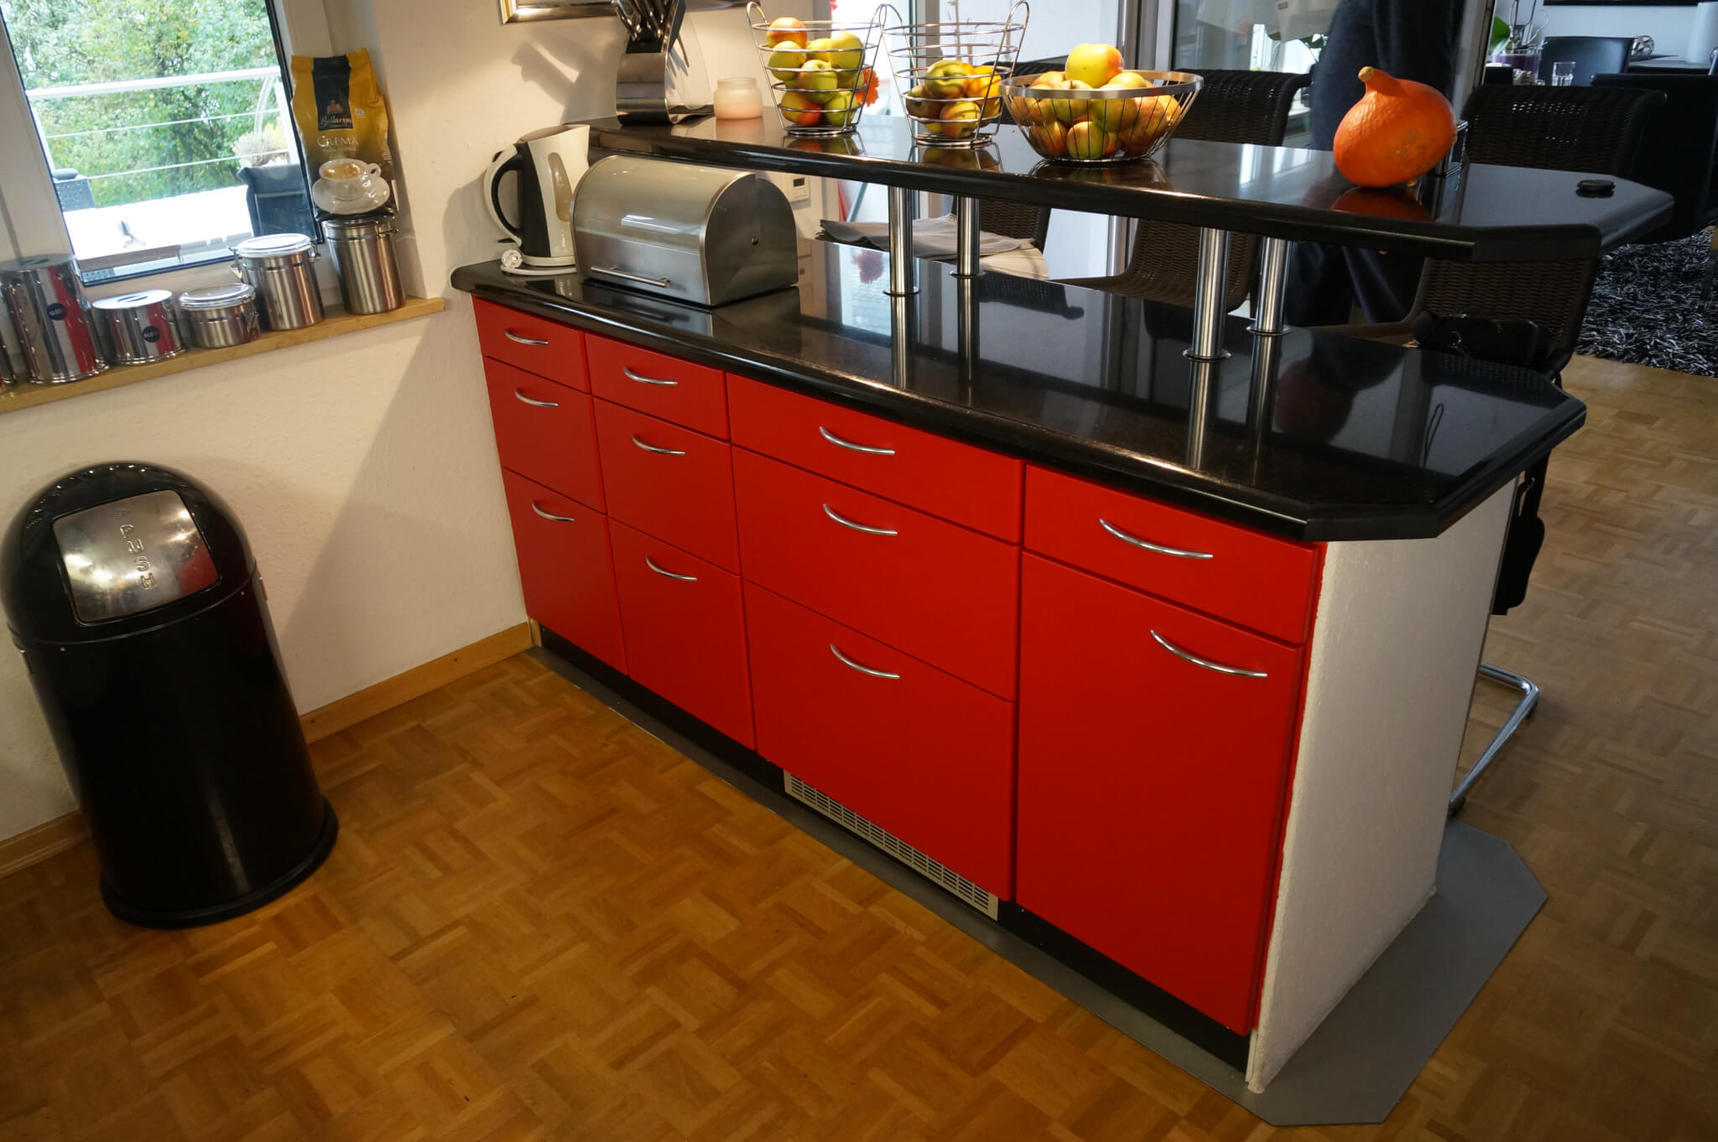 Lámina adhesiva colorida con imagen de ejemplo de armarios de cocina en rojo CO-BA-S147 Rough Lobster